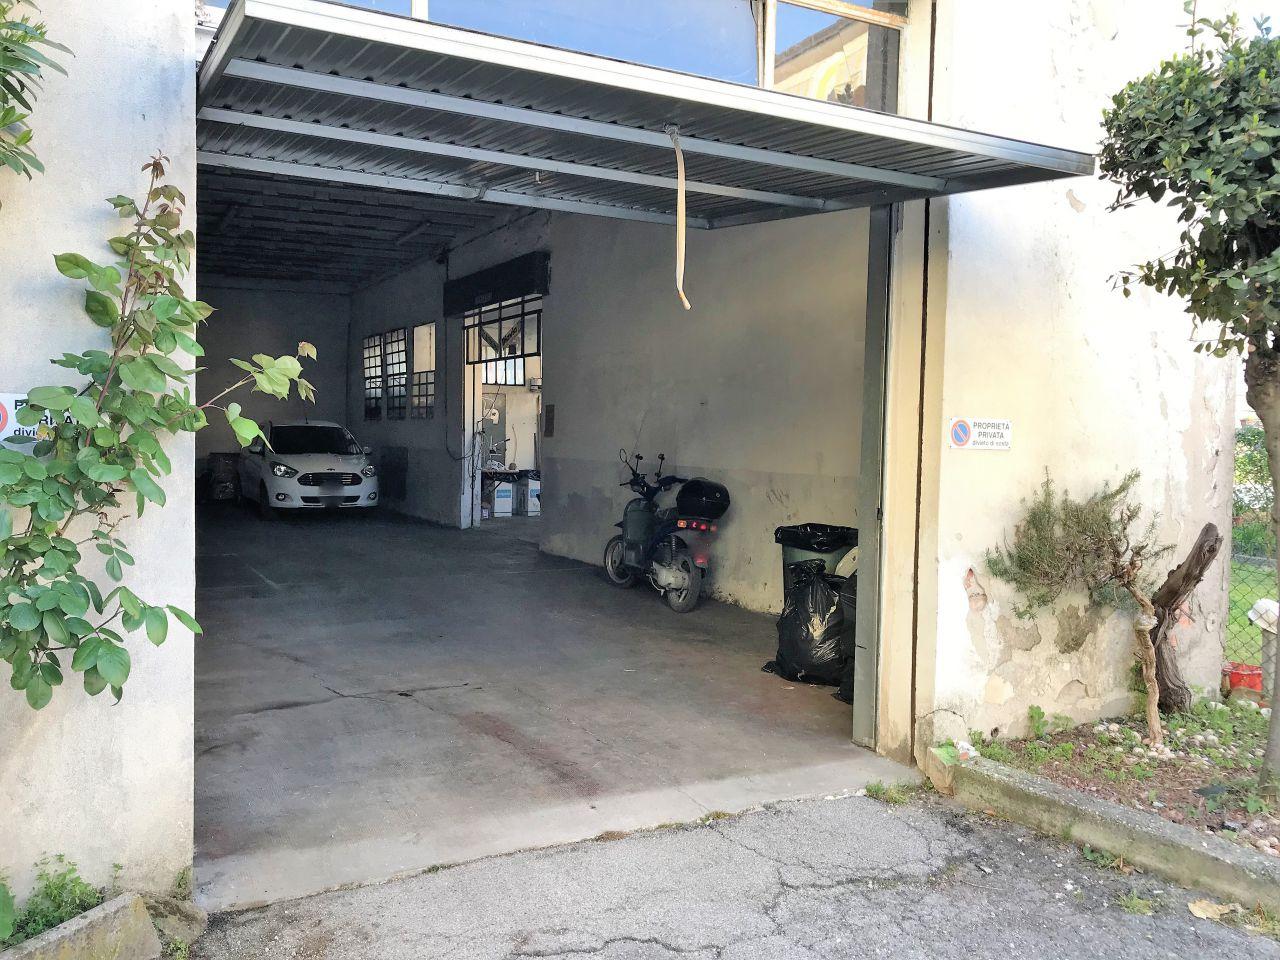 Garage - Autosilos - Parcheggio in affitto a Abano Terme